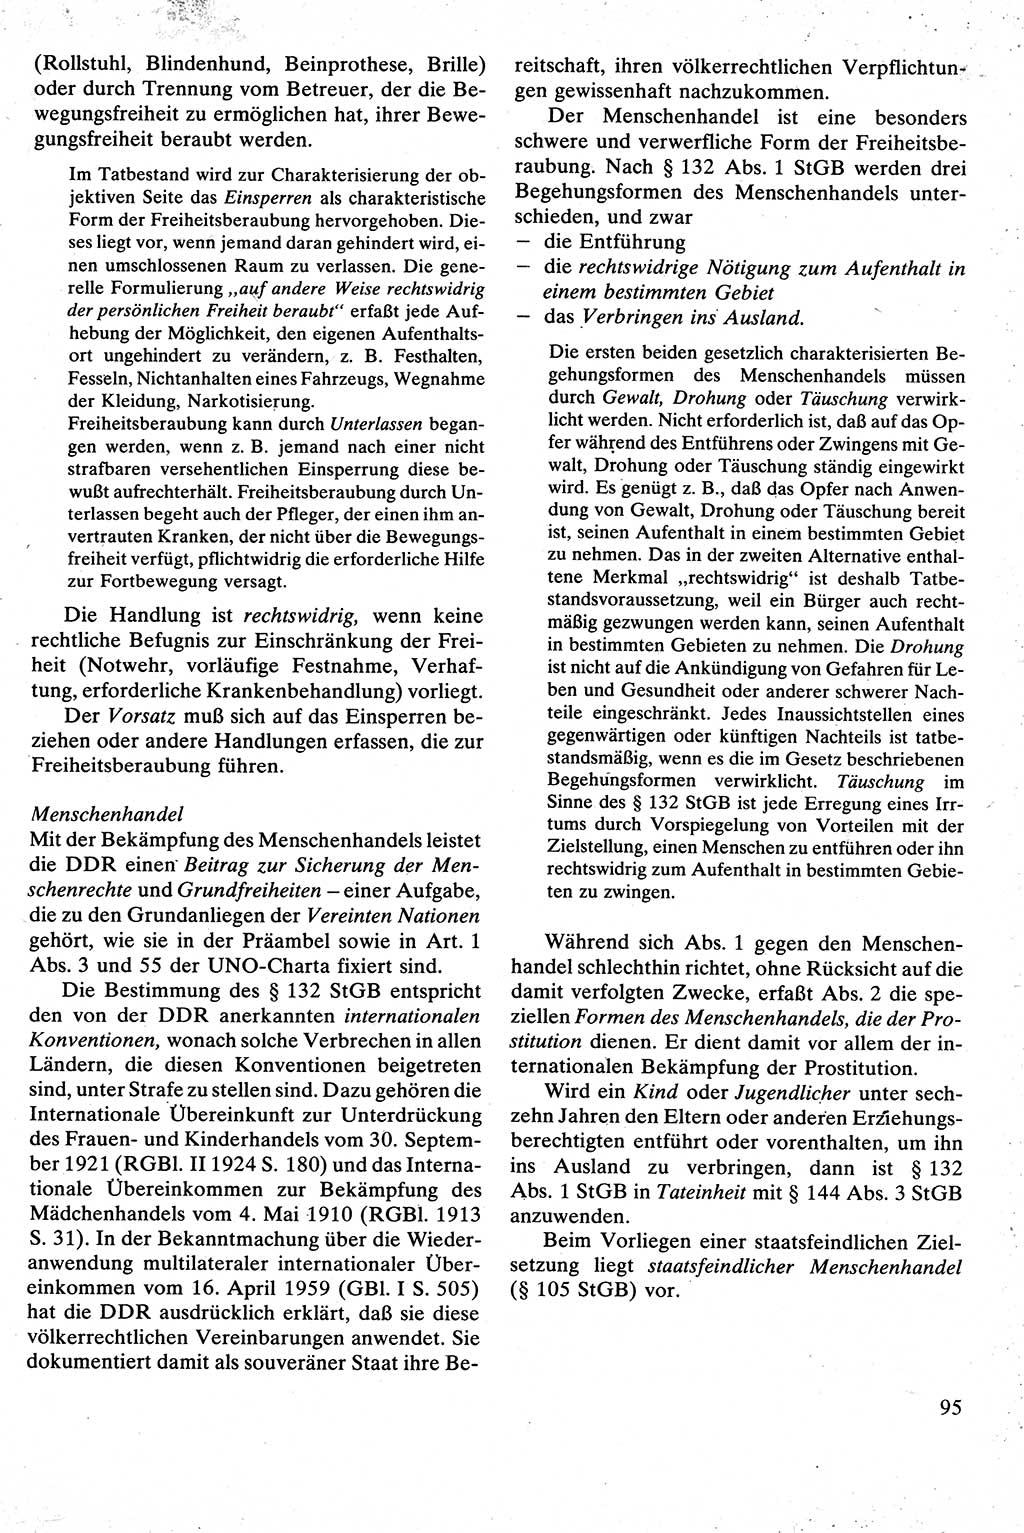 Strafrecht [Deutsche Demokratische Republik (DDR)], Besonderer Teil, Lehrbuch 1981, Seite 95 (Strafr. DDR BT Lb. 1981, S. 95)